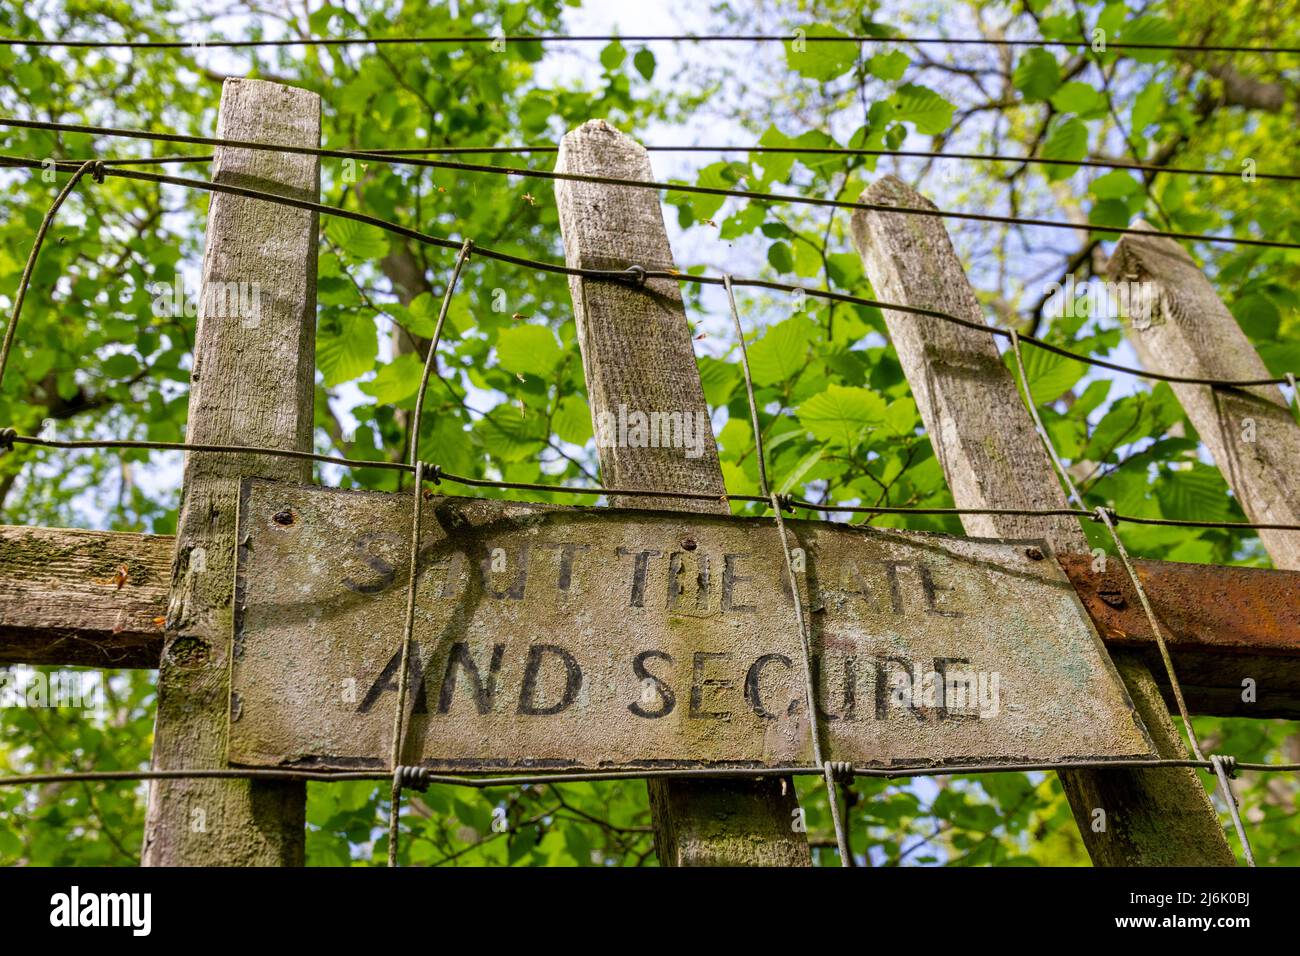 Fermer la barrière de sécurité à l'épreuve des cerfs Hayley Wood, Cambs Banque D'Images